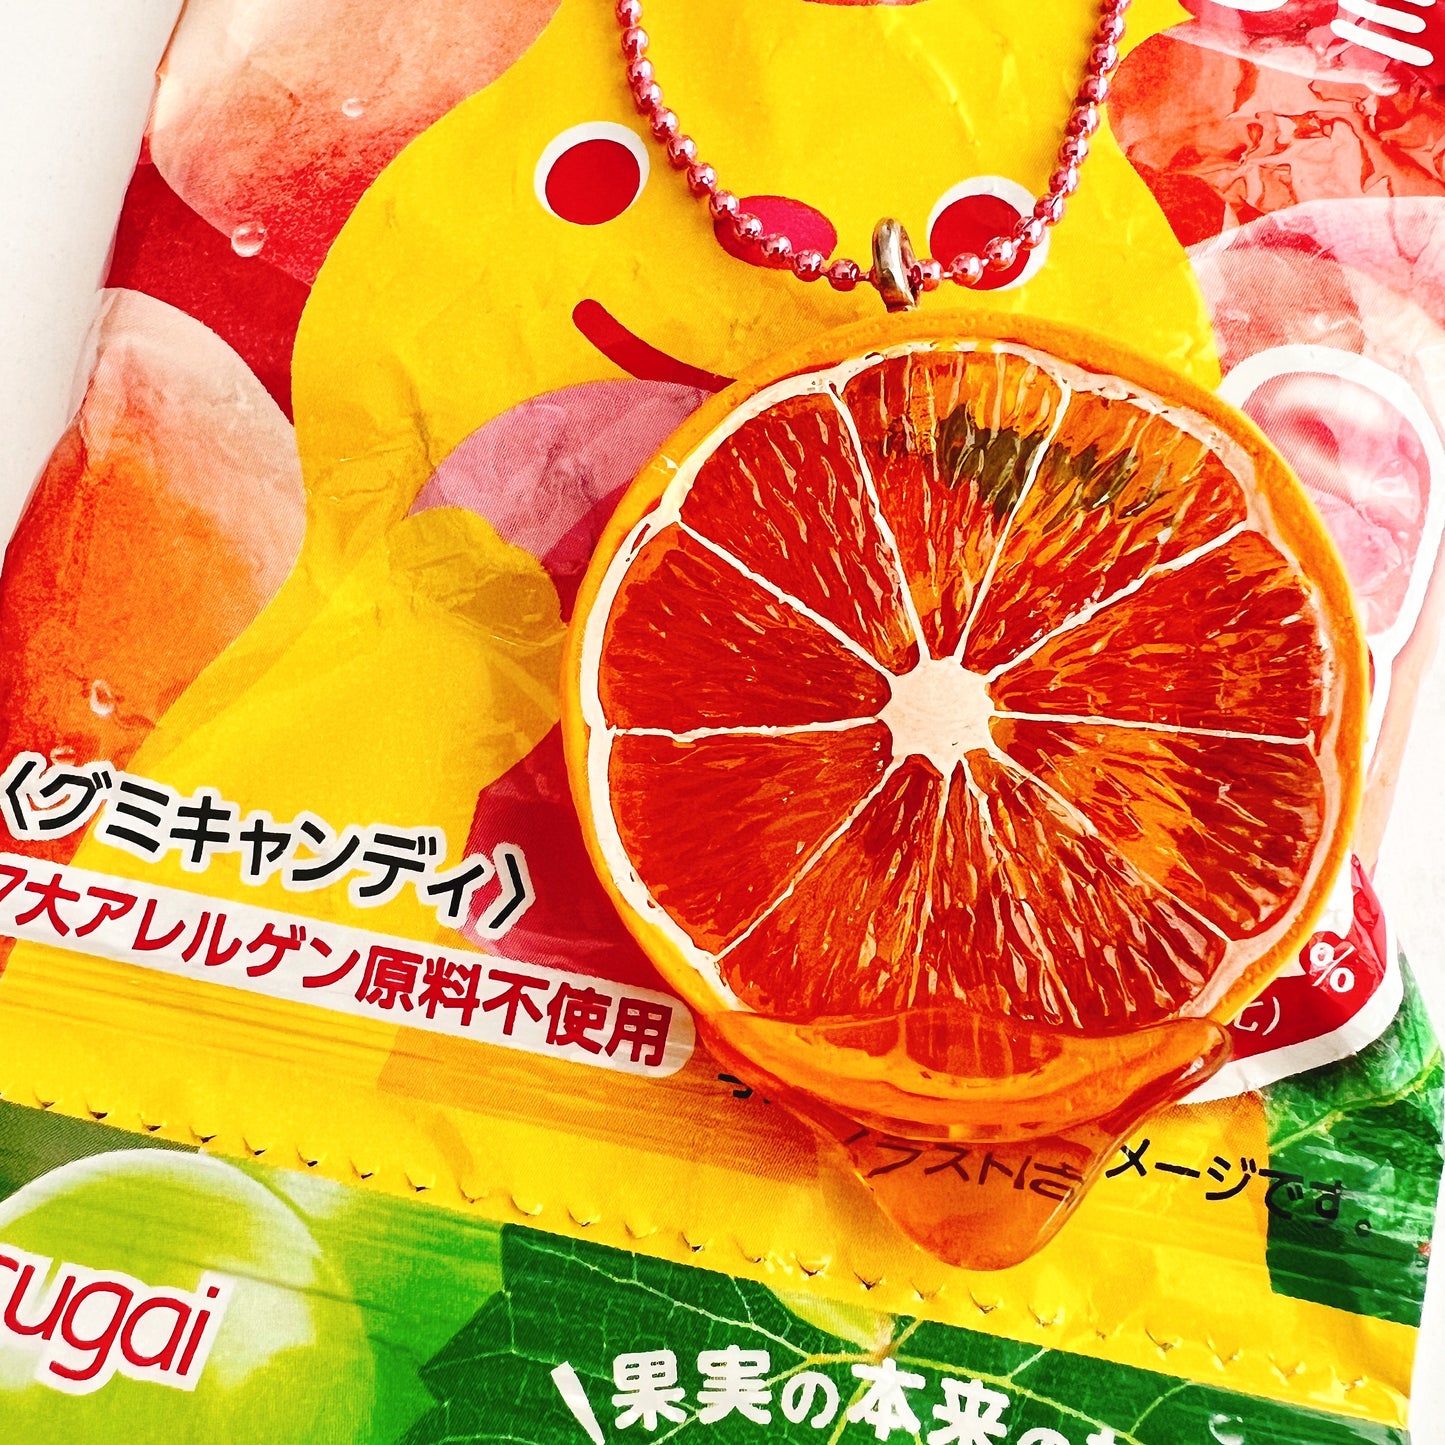 Sale! DeLuxe Juicy Fruit Necklace - Orange